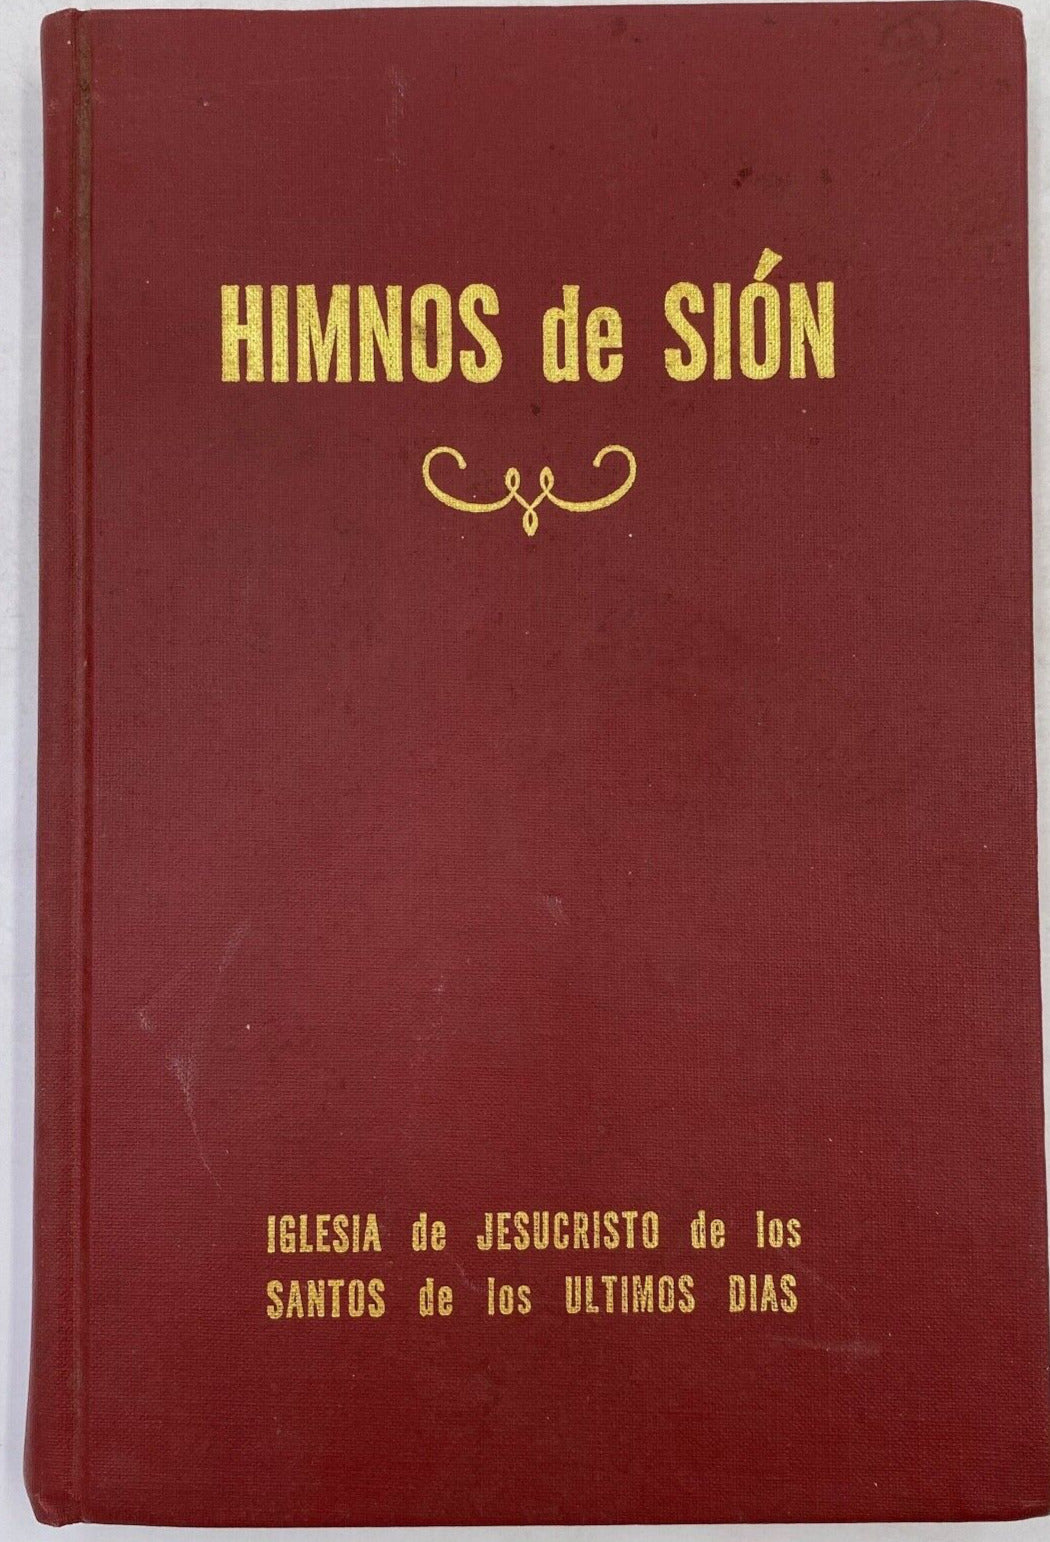 Himnos de Sion - Iglesia de Jesucristo De los Santos 1986